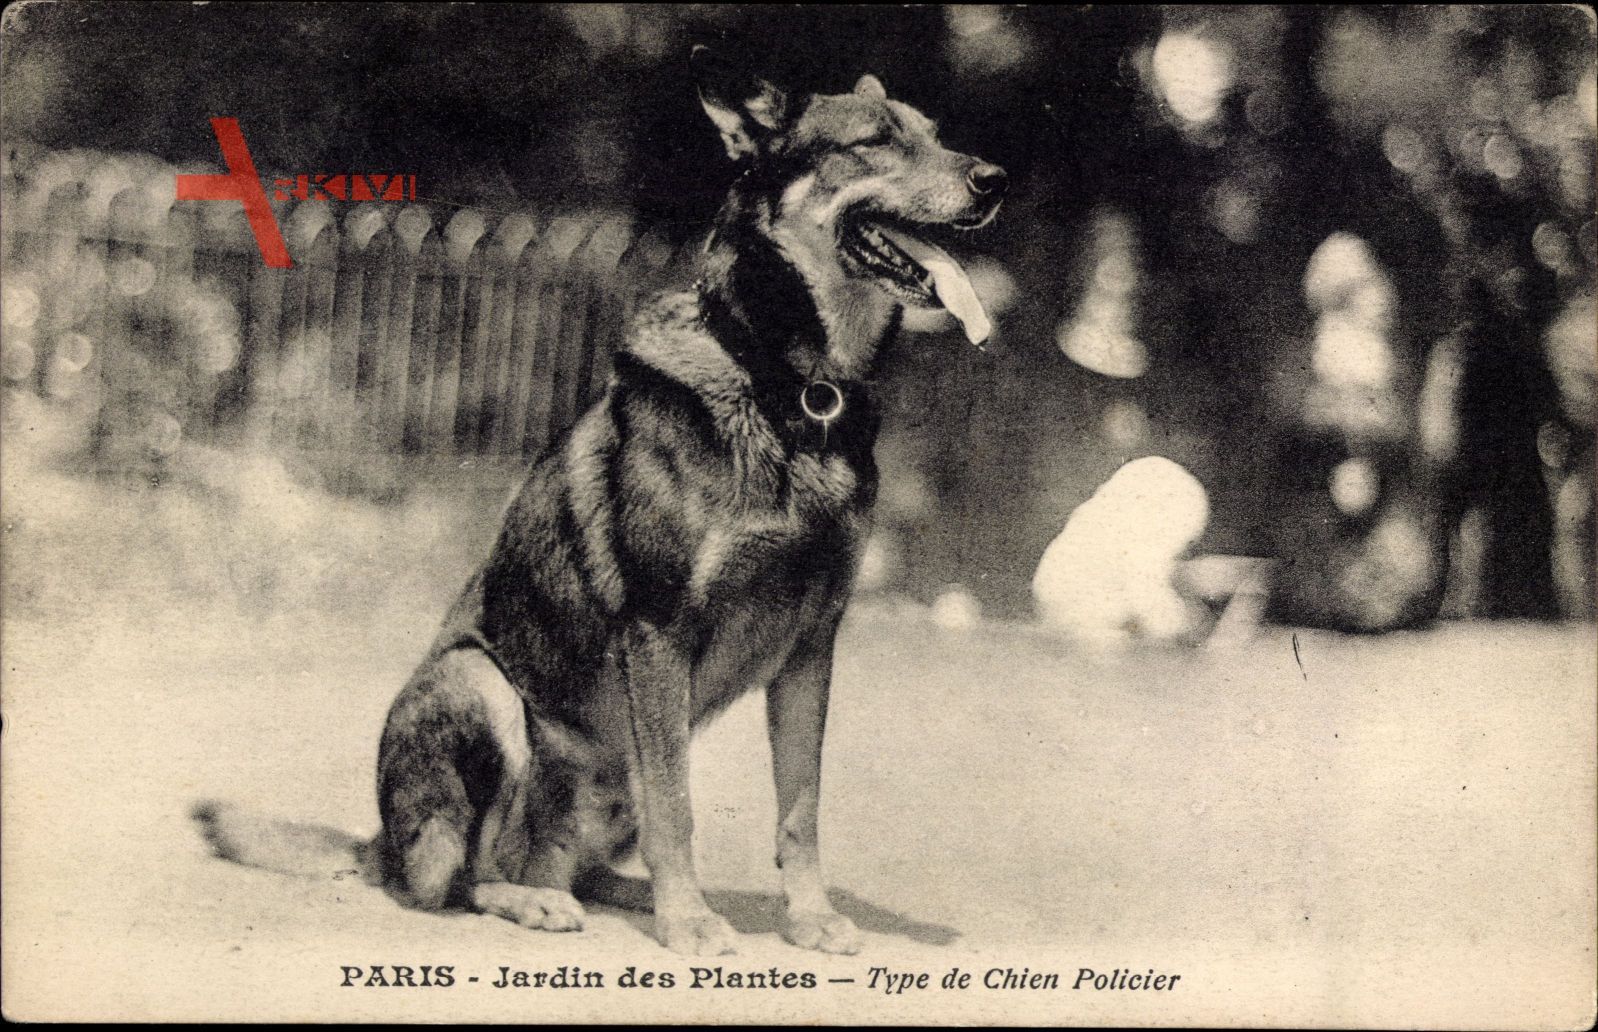 Paris, Jardin des Plantes, Type de Chien Policier, Polizeihund